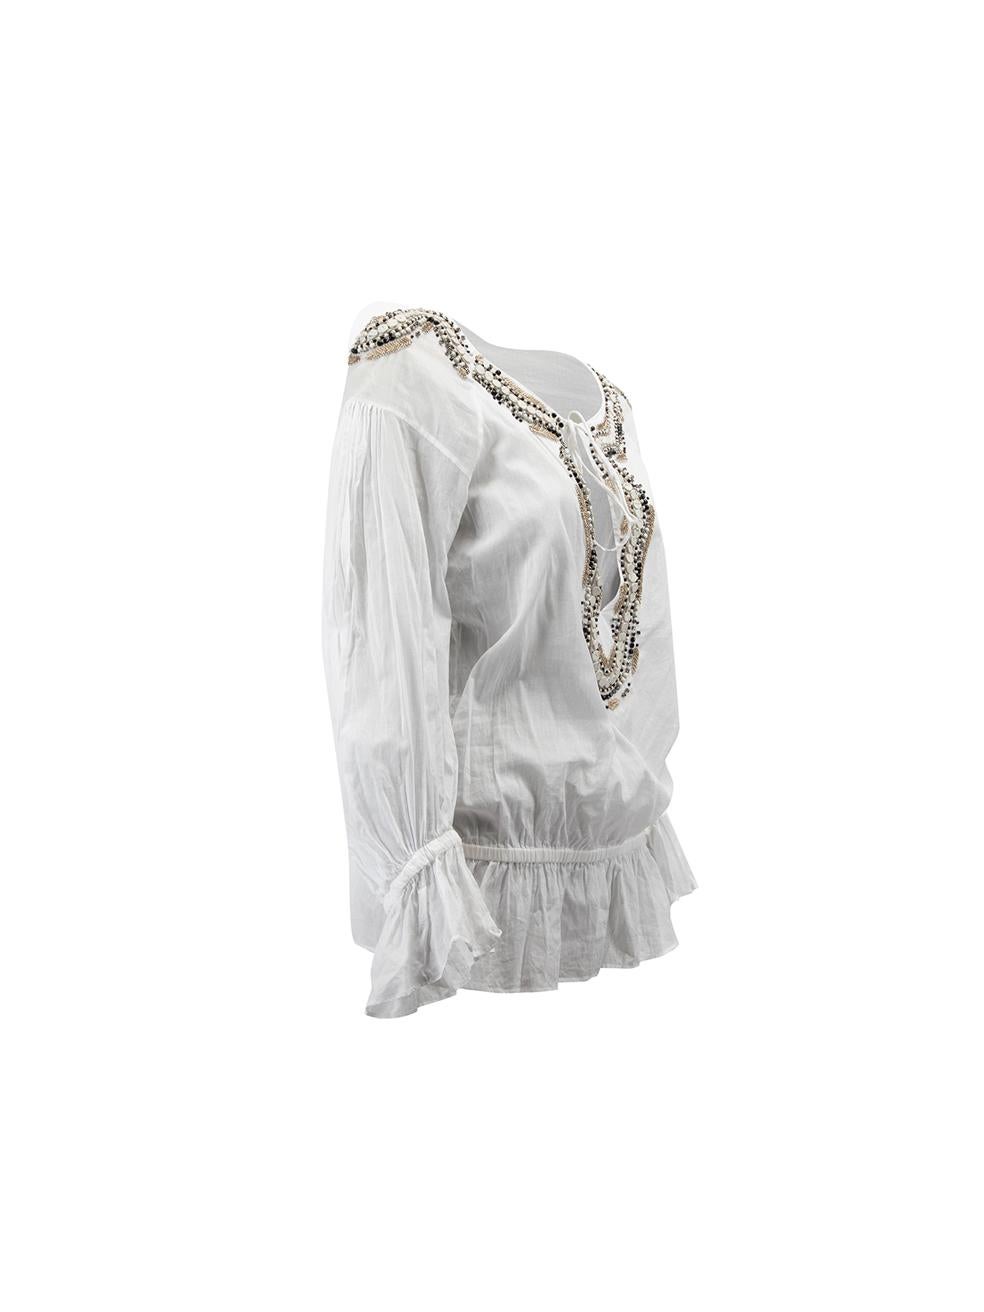 CONDIT ist sehr gut. Minimale Abnutzung der Bluse ist offensichtlich. Minimale lose Fäden um die Perlen und Verschleiß auf der Rückseite des Ausschnitts auf dieser gebrauchten Roberto Cavalli Designer Wiederverkauf Artikel.